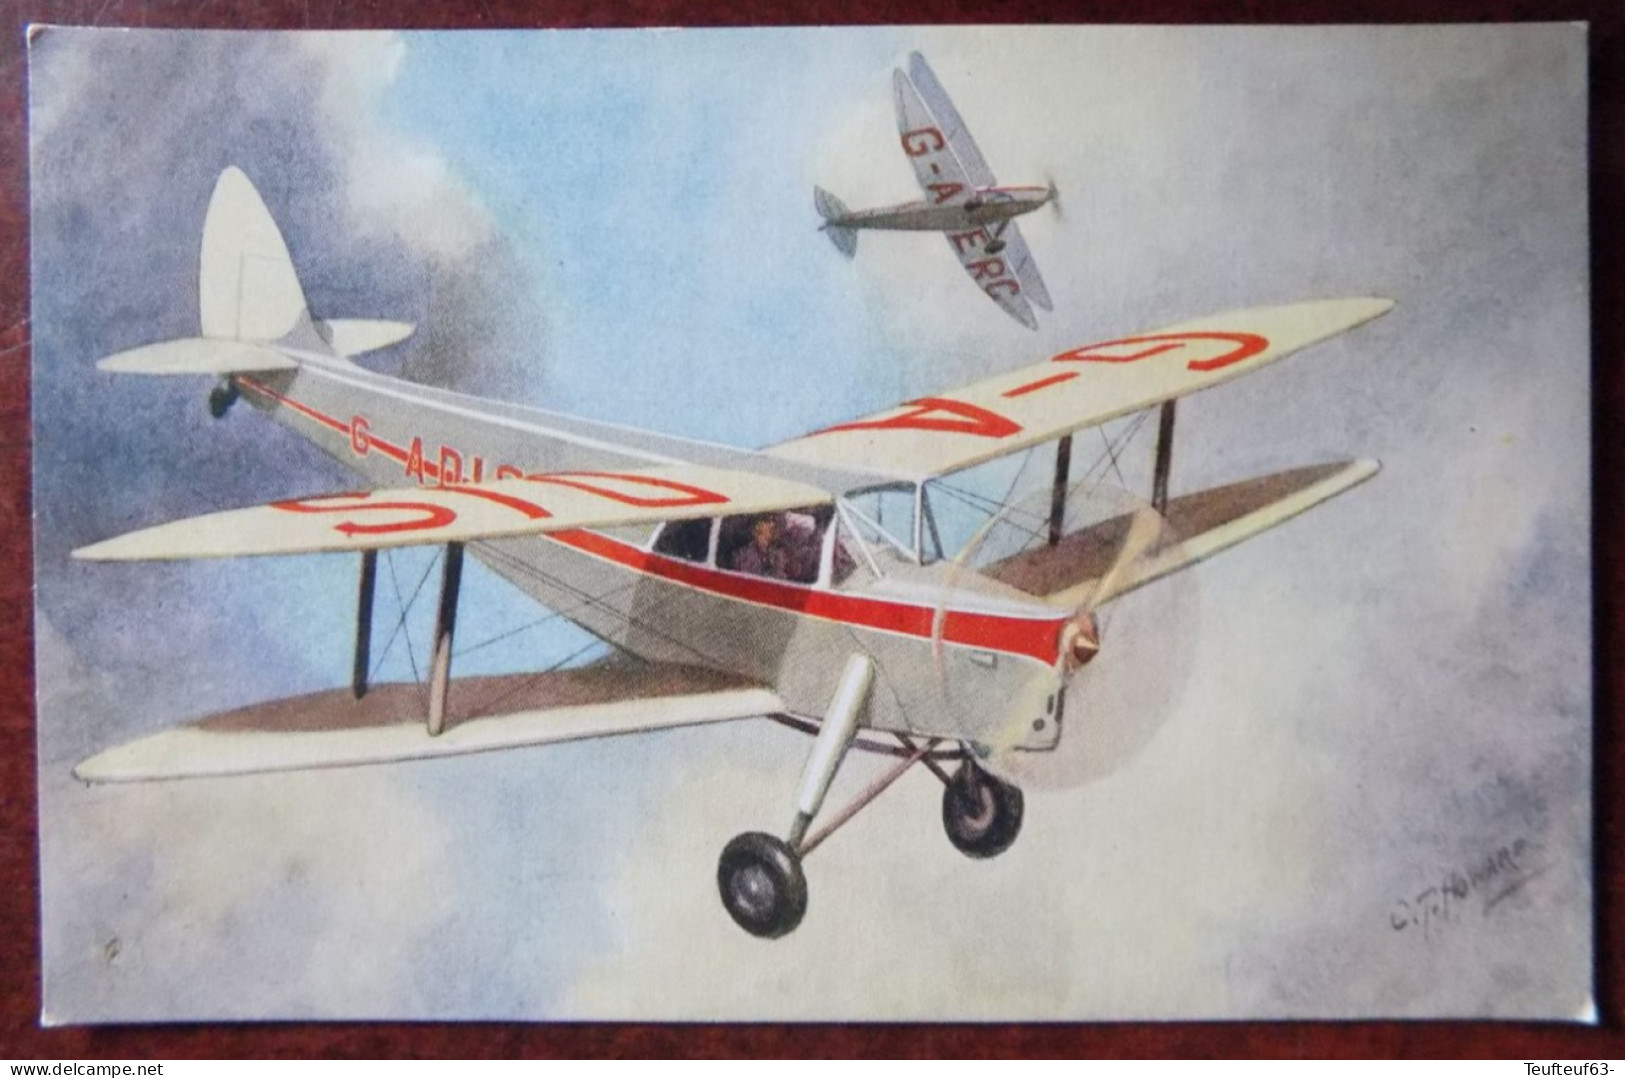 Cpa De Havilland " Hornet Moth "  - Ill. Howard - 1919-1938: Between Wars